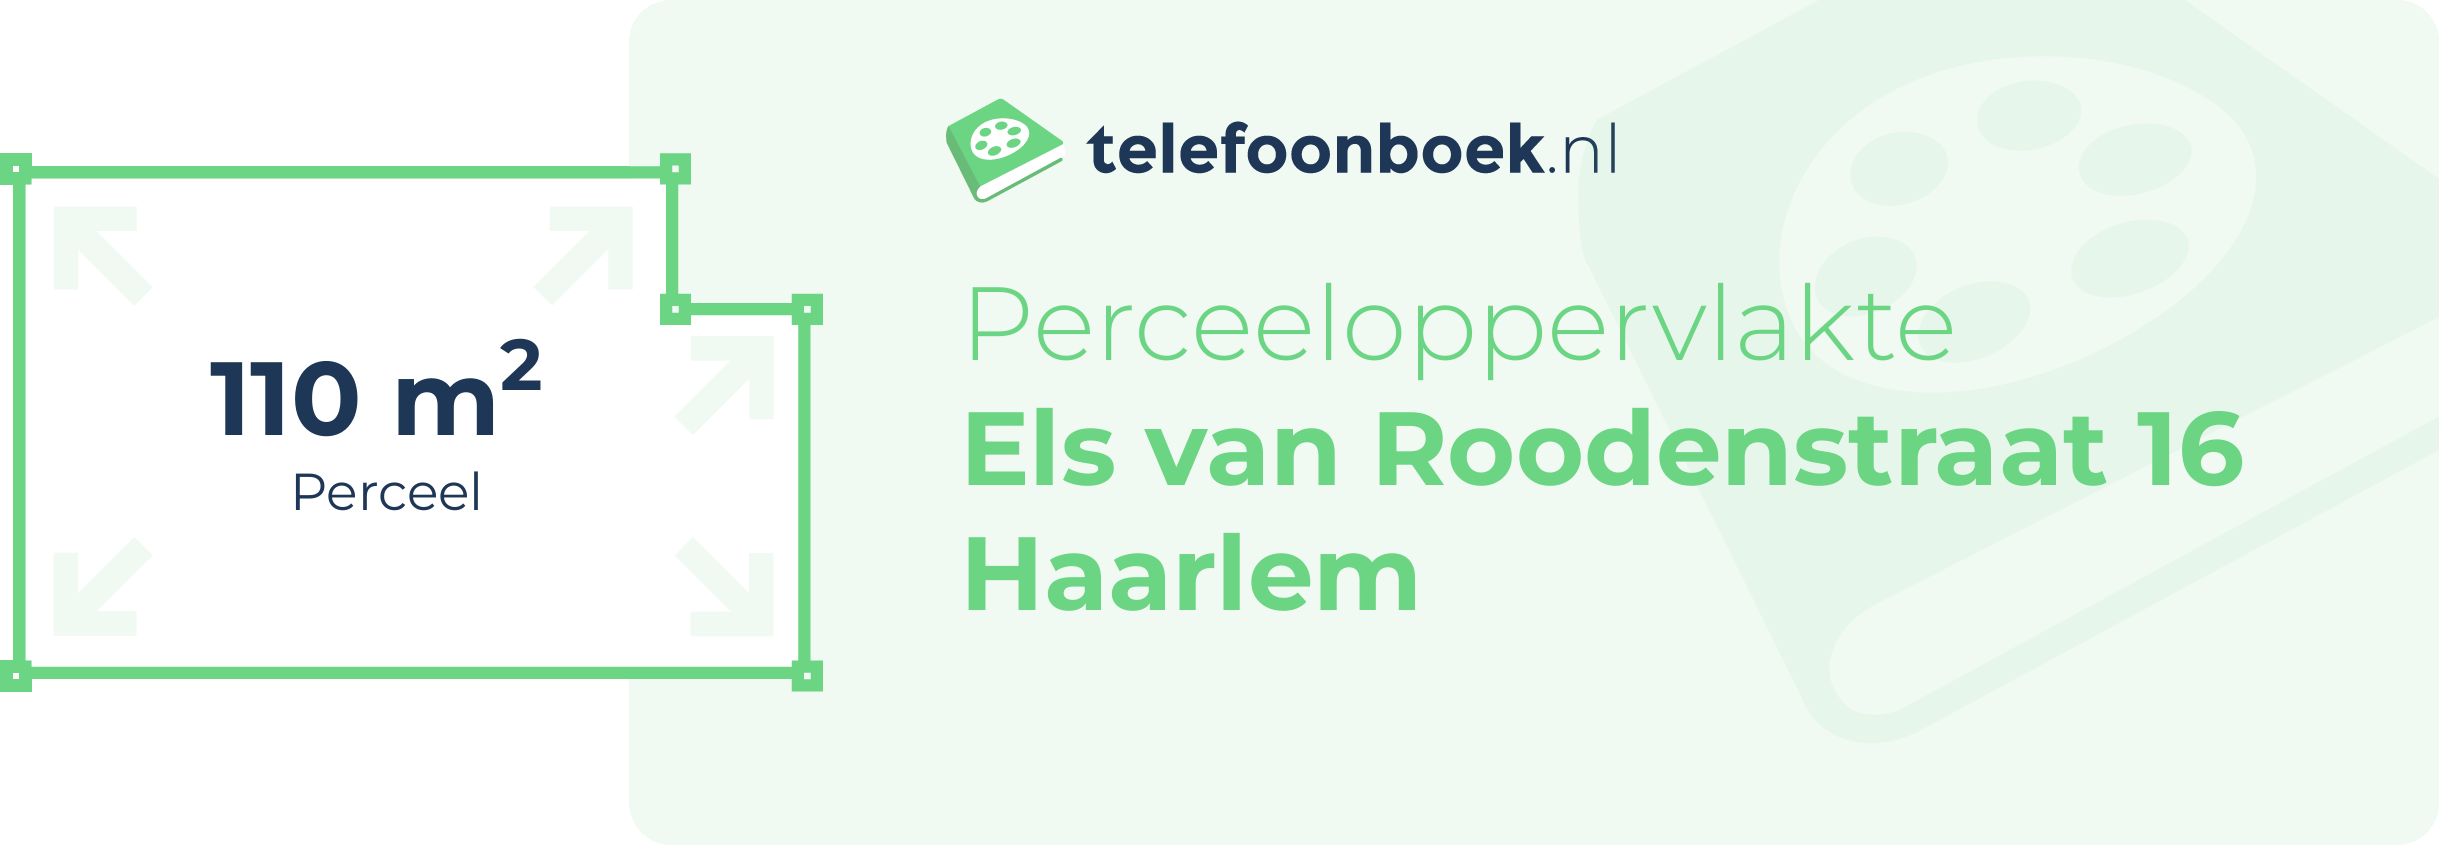 Perceeloppervlakte Els Van Roodenstraat 16 Haarlem